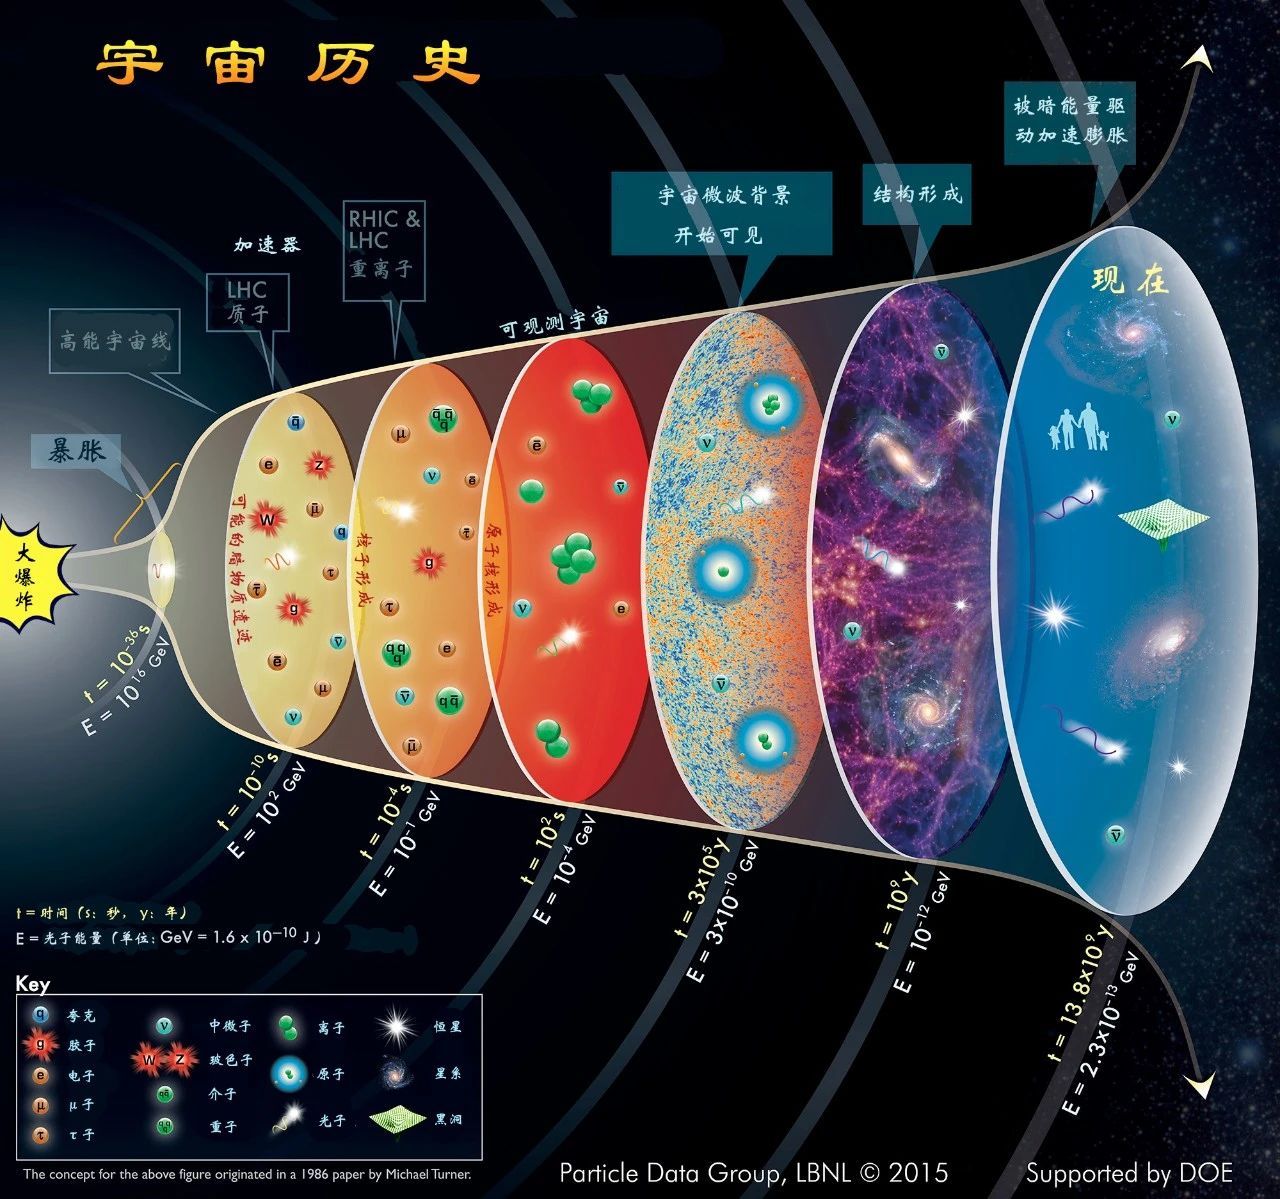 科学网—[转载]从地底到深空：核天体物理实验帮助解开古老恒星中元素产生之谜 | The Innovation - 刘朝峰的博文